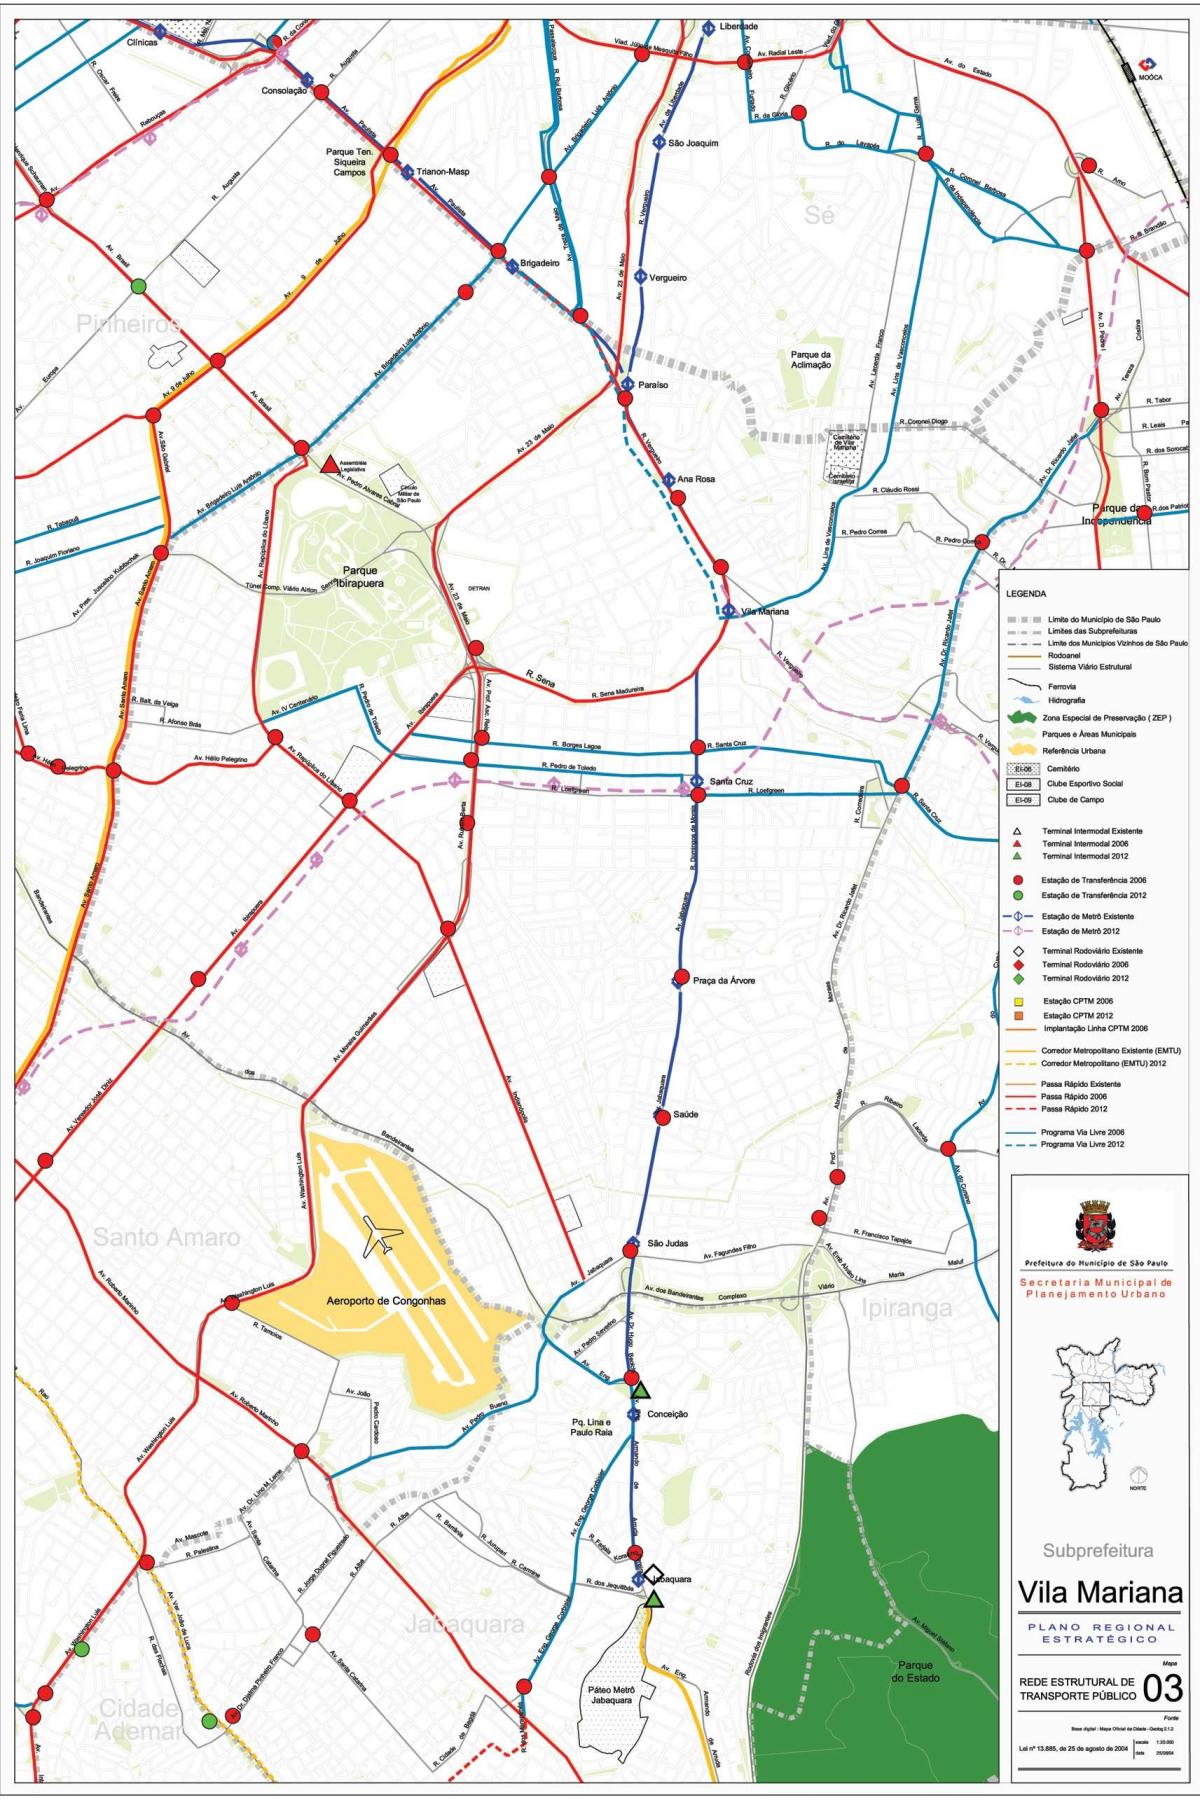 Мапа на Вила Мариана São Паоло - Јавни превезува